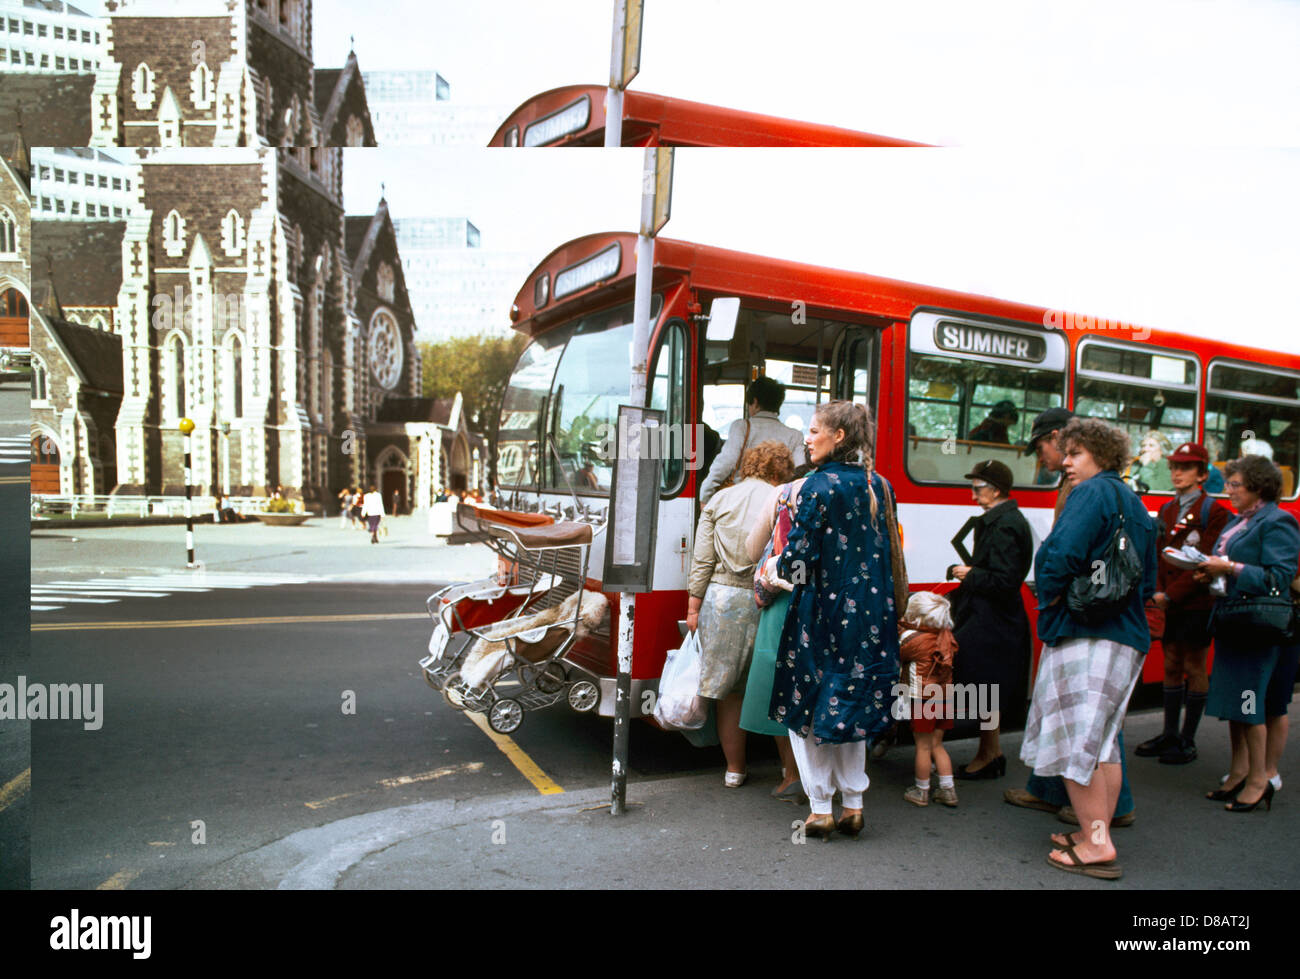 Christchurch Neuseeland Menschen einsteigen in einen Bus Kinderwagen hängen  an den vorderen Teil des Busses Stockfotografie - Alamy